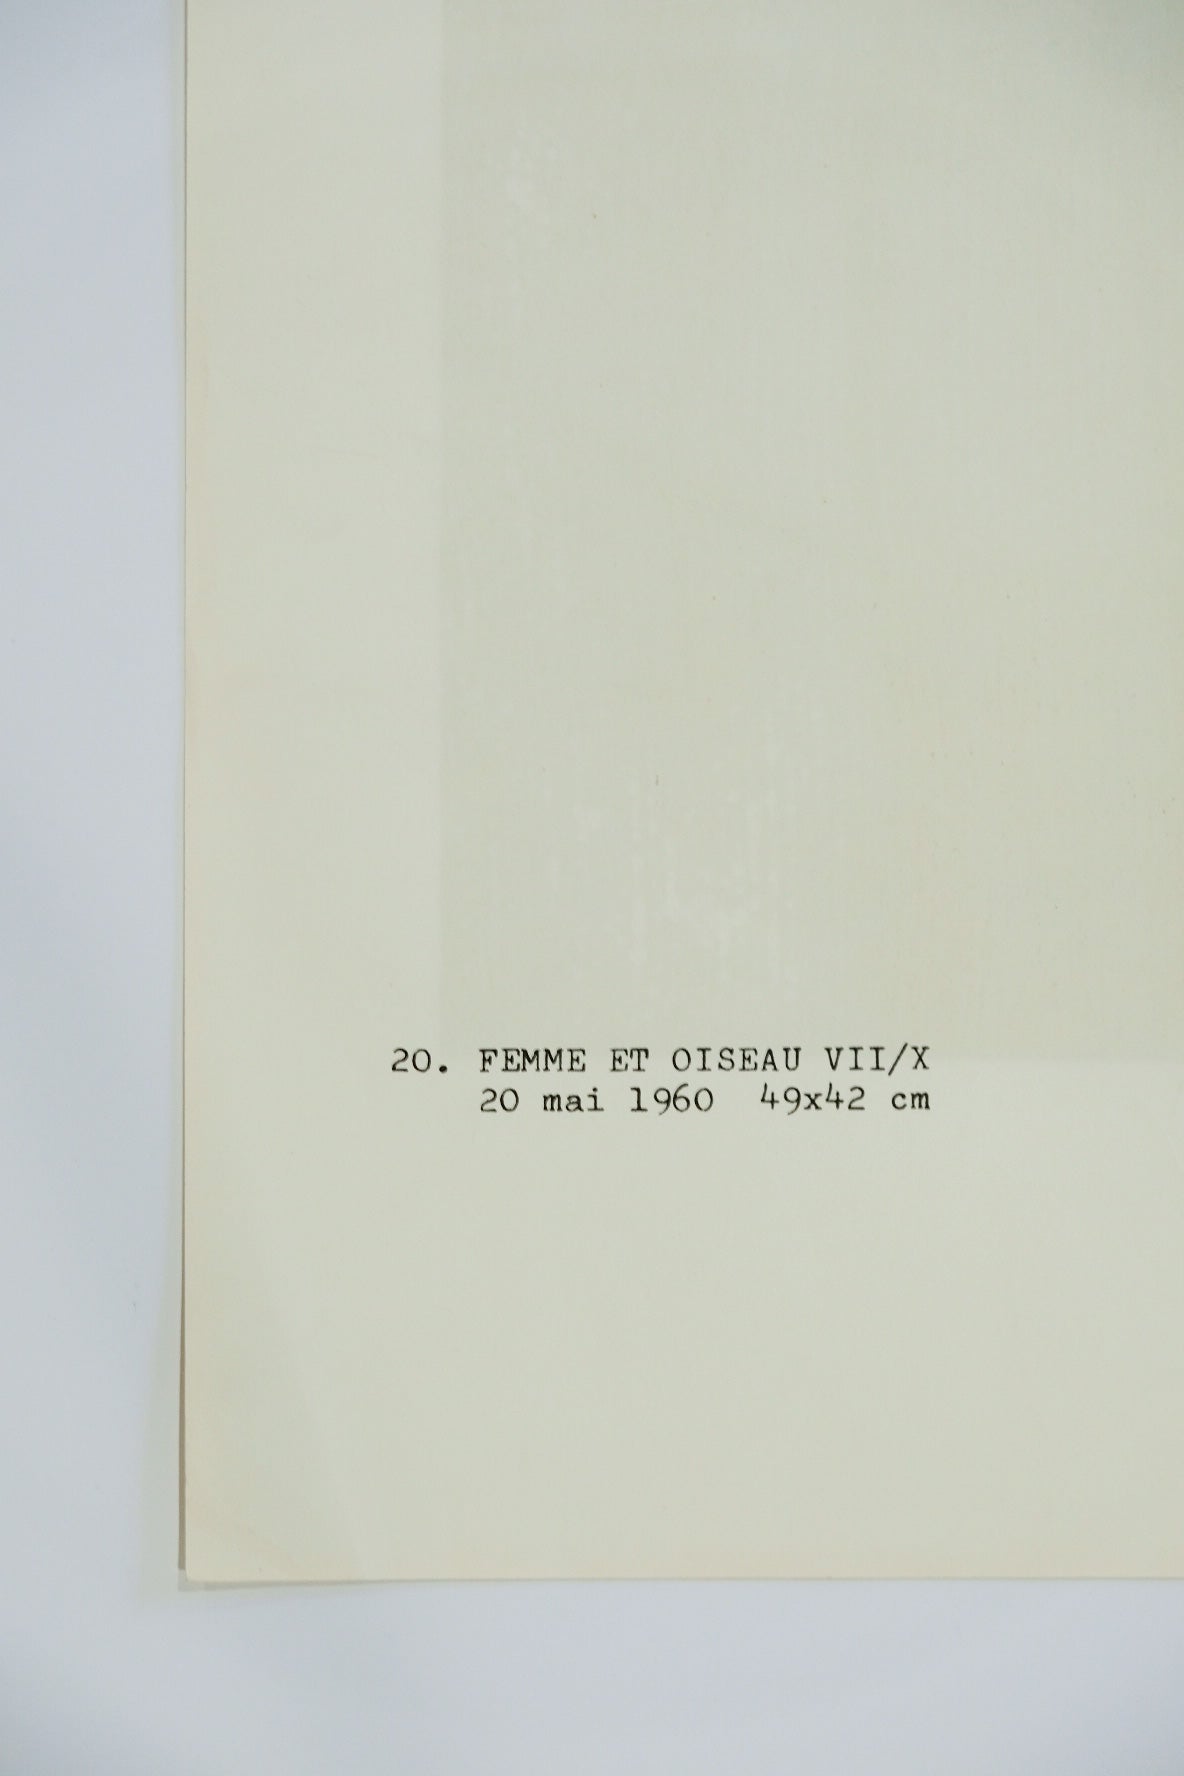 Joan Miro "FEMME ET OISEAU" VII/X plate #20